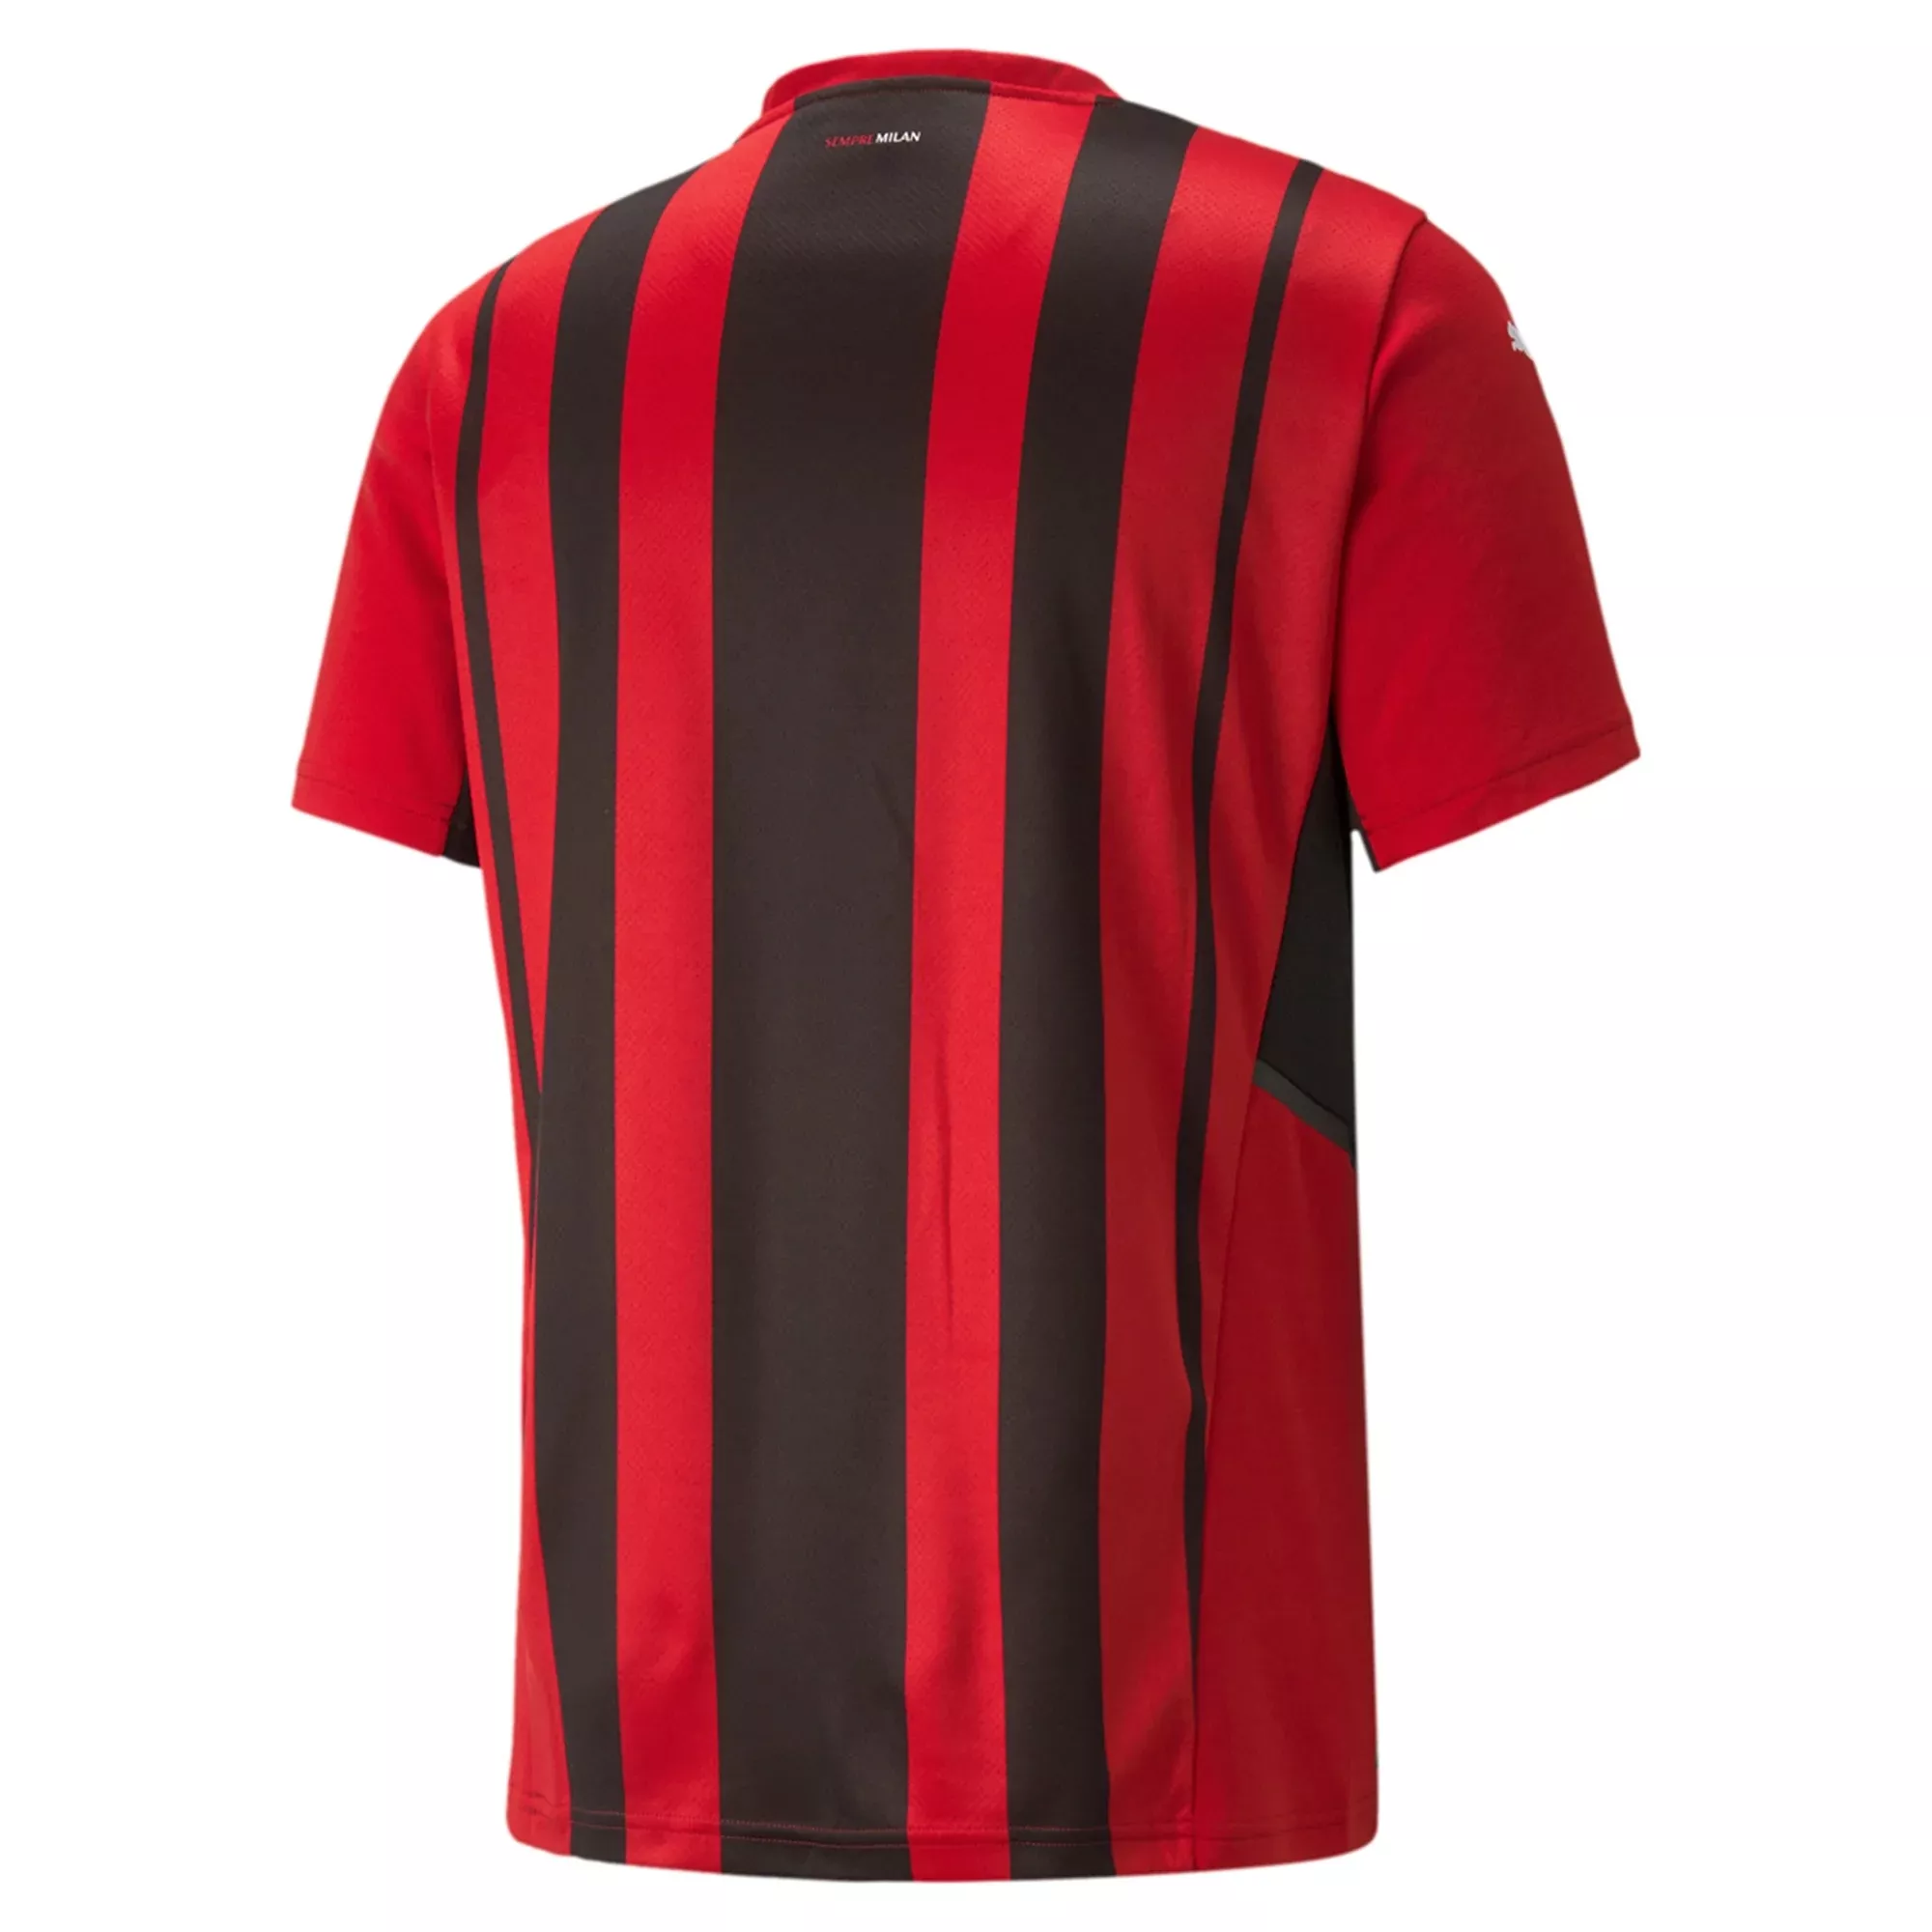 Camiseta Futbol Local de Hombre AC Milan 2021/22 con Número de IBRAHIMOVIĆ #11 - camisetasfutbol